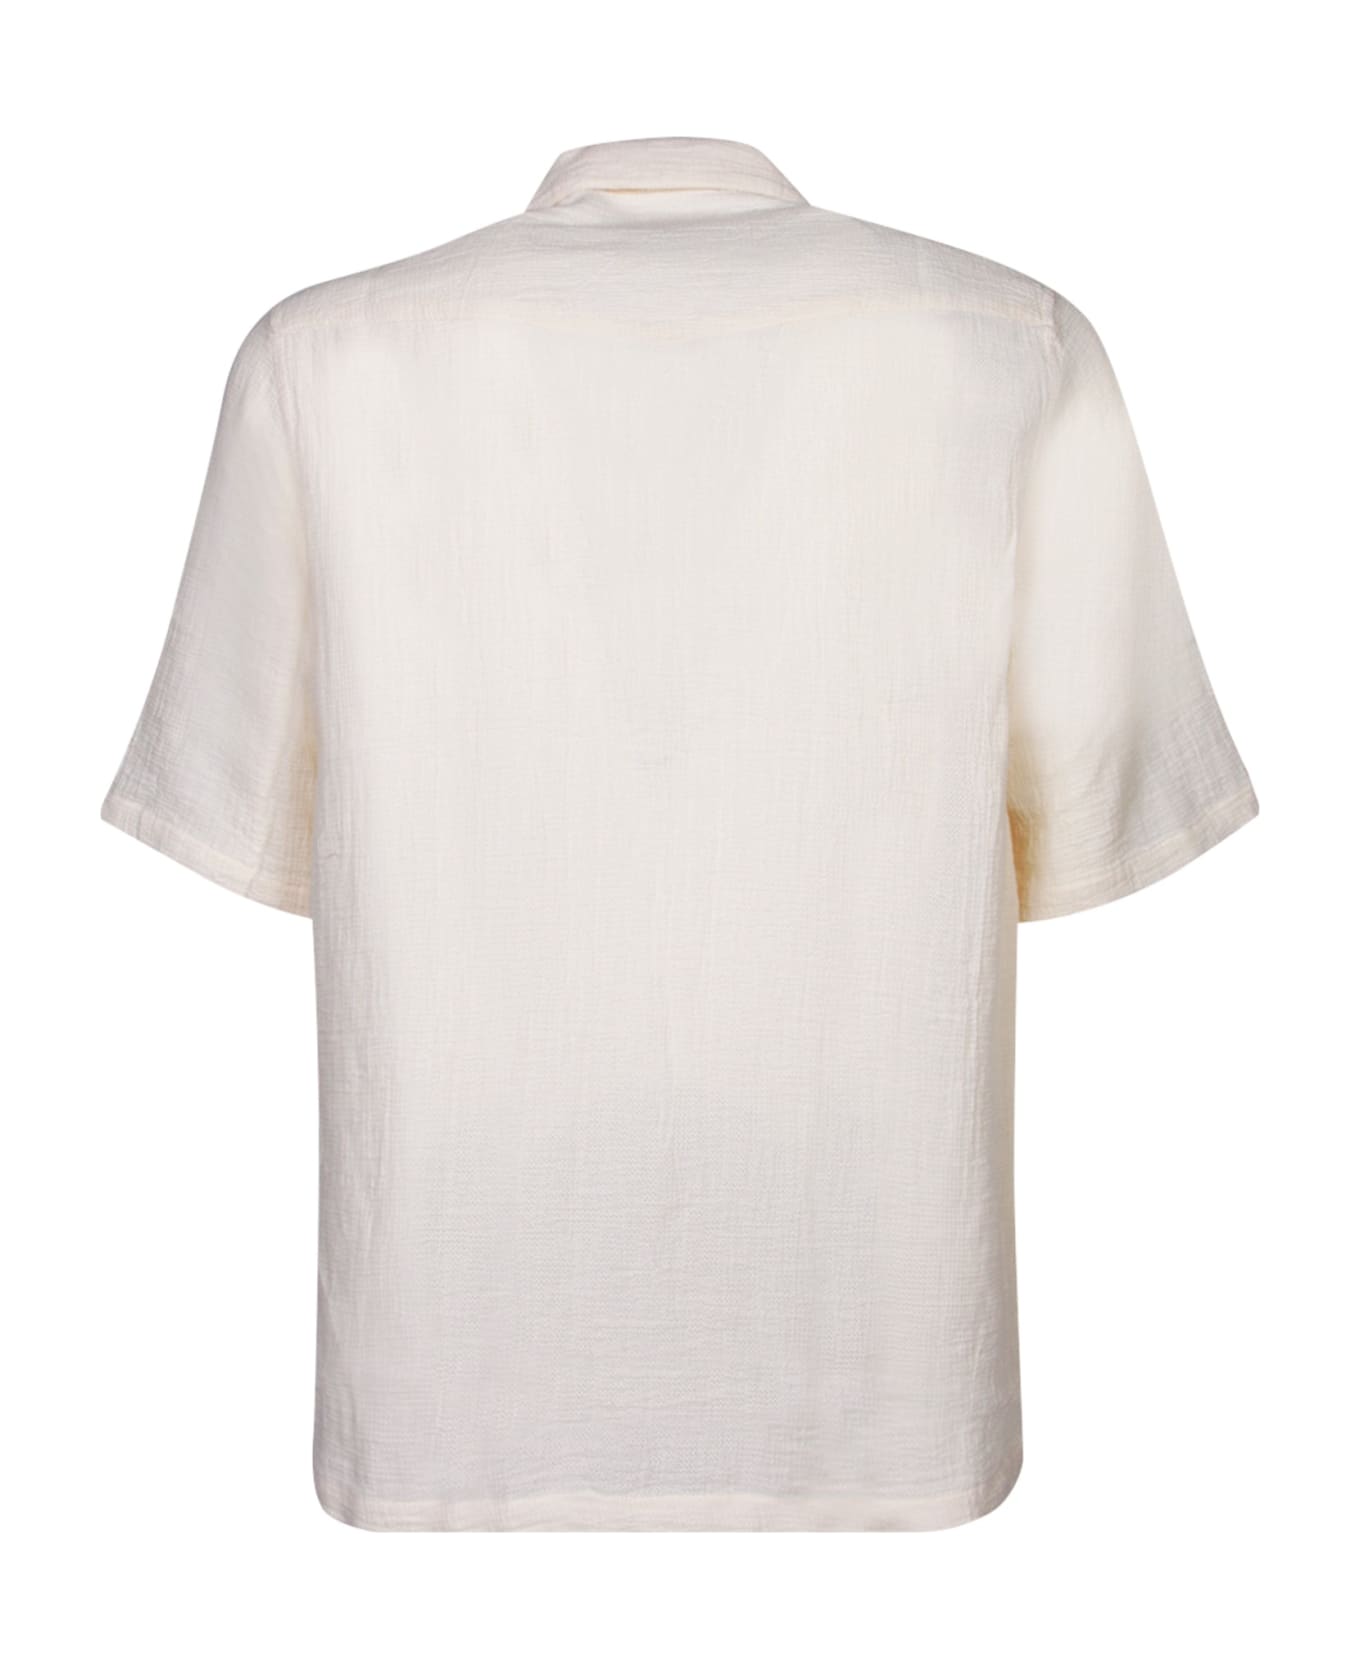 Officine Générale Short Sleeves White Shirt - White シャツ